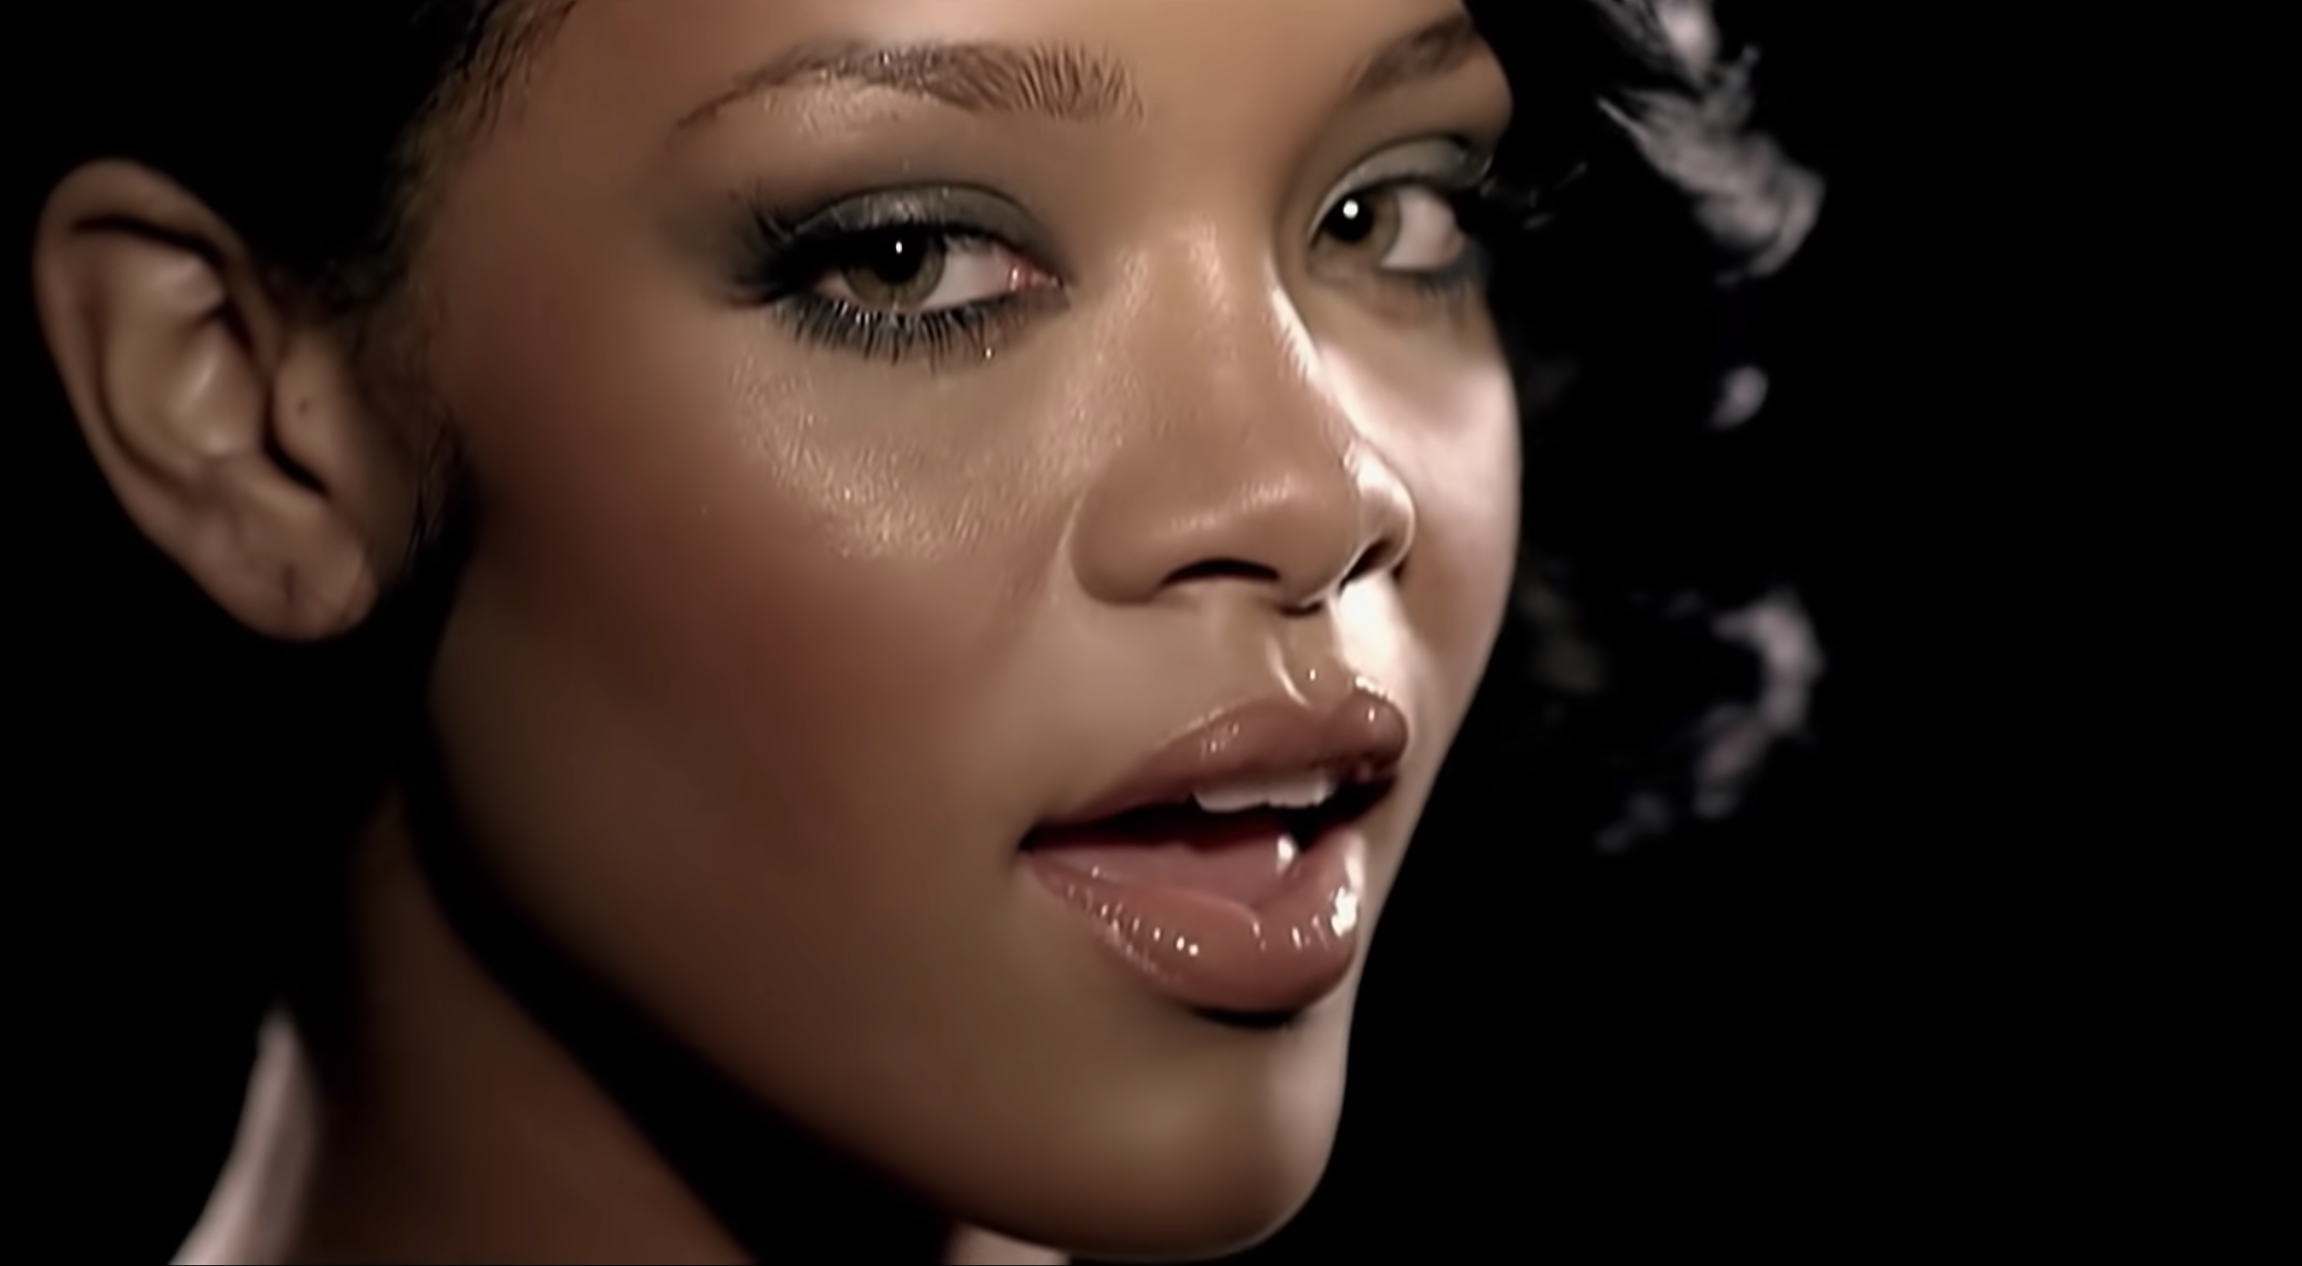 "Rihanna featuring Jay-Z. 